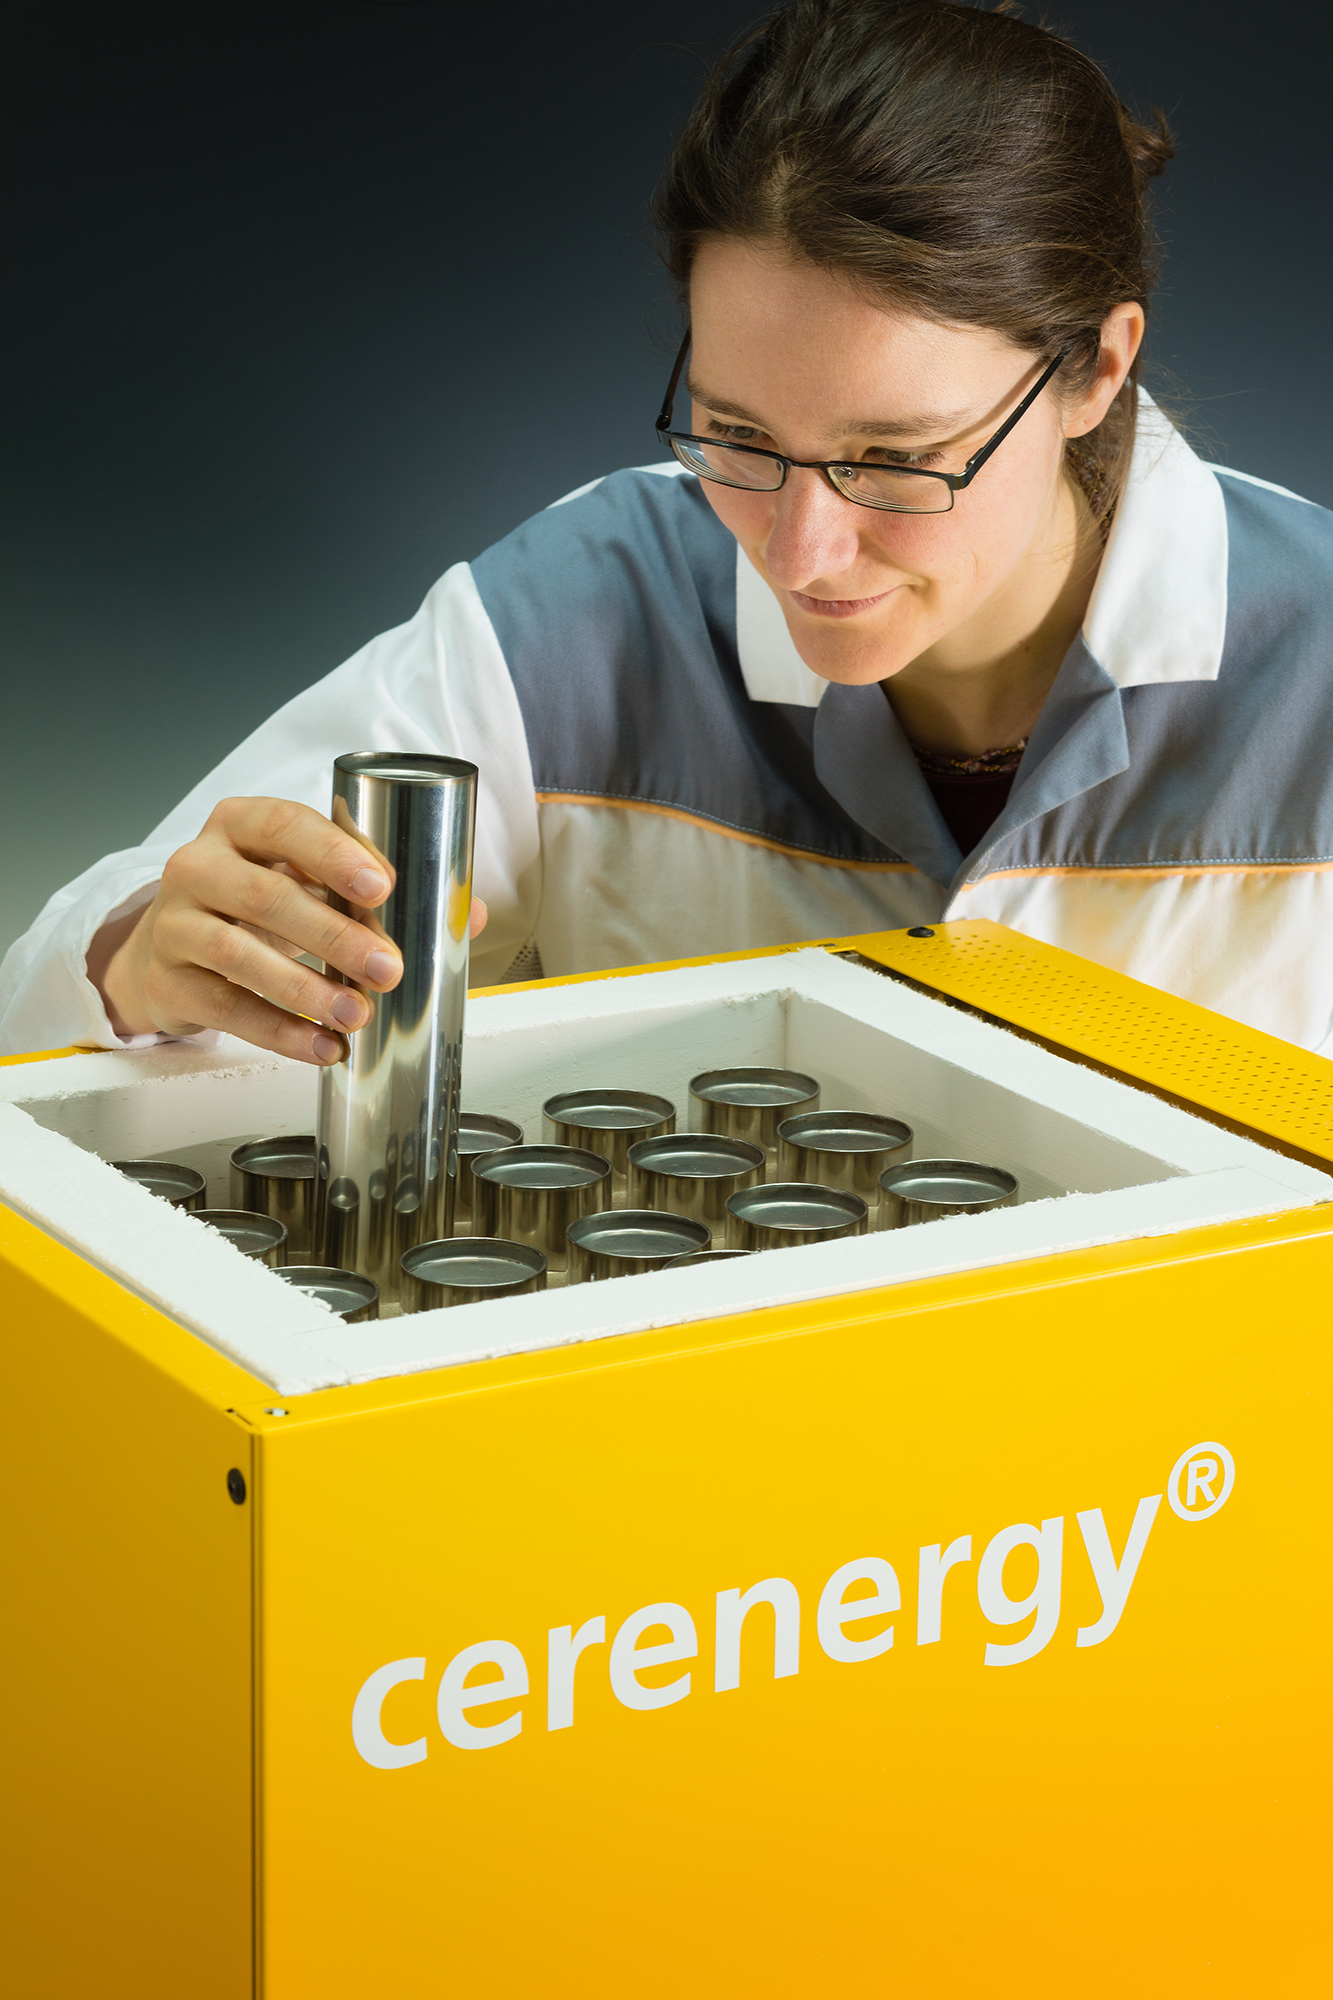 cerenergy® – Umweltfreundliche und kostengünstige Natrium-Batterie zur stationären Energiespeicherung.